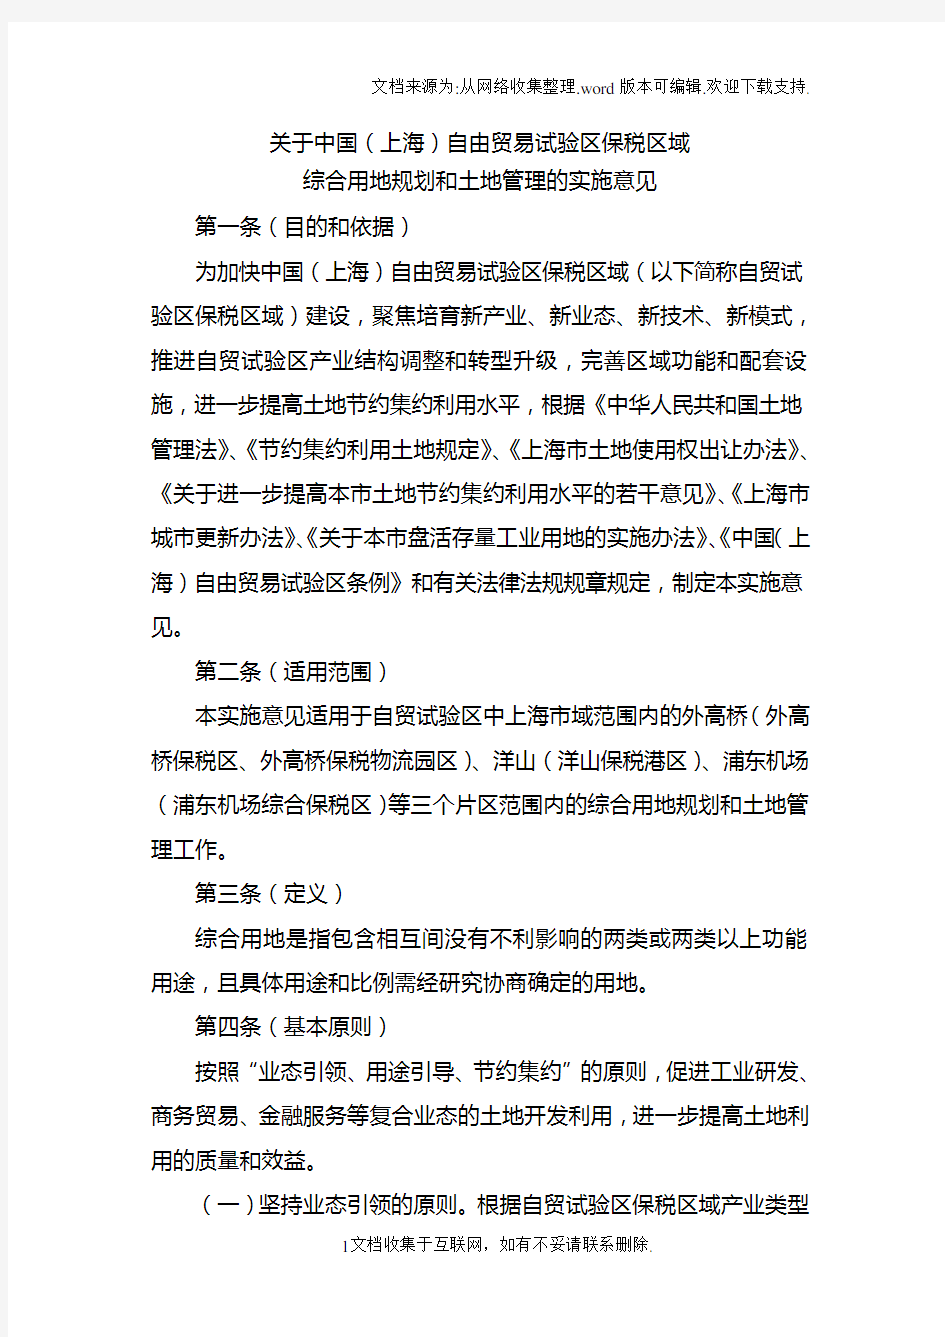 关于中国上海自由贸易试验区保税区域